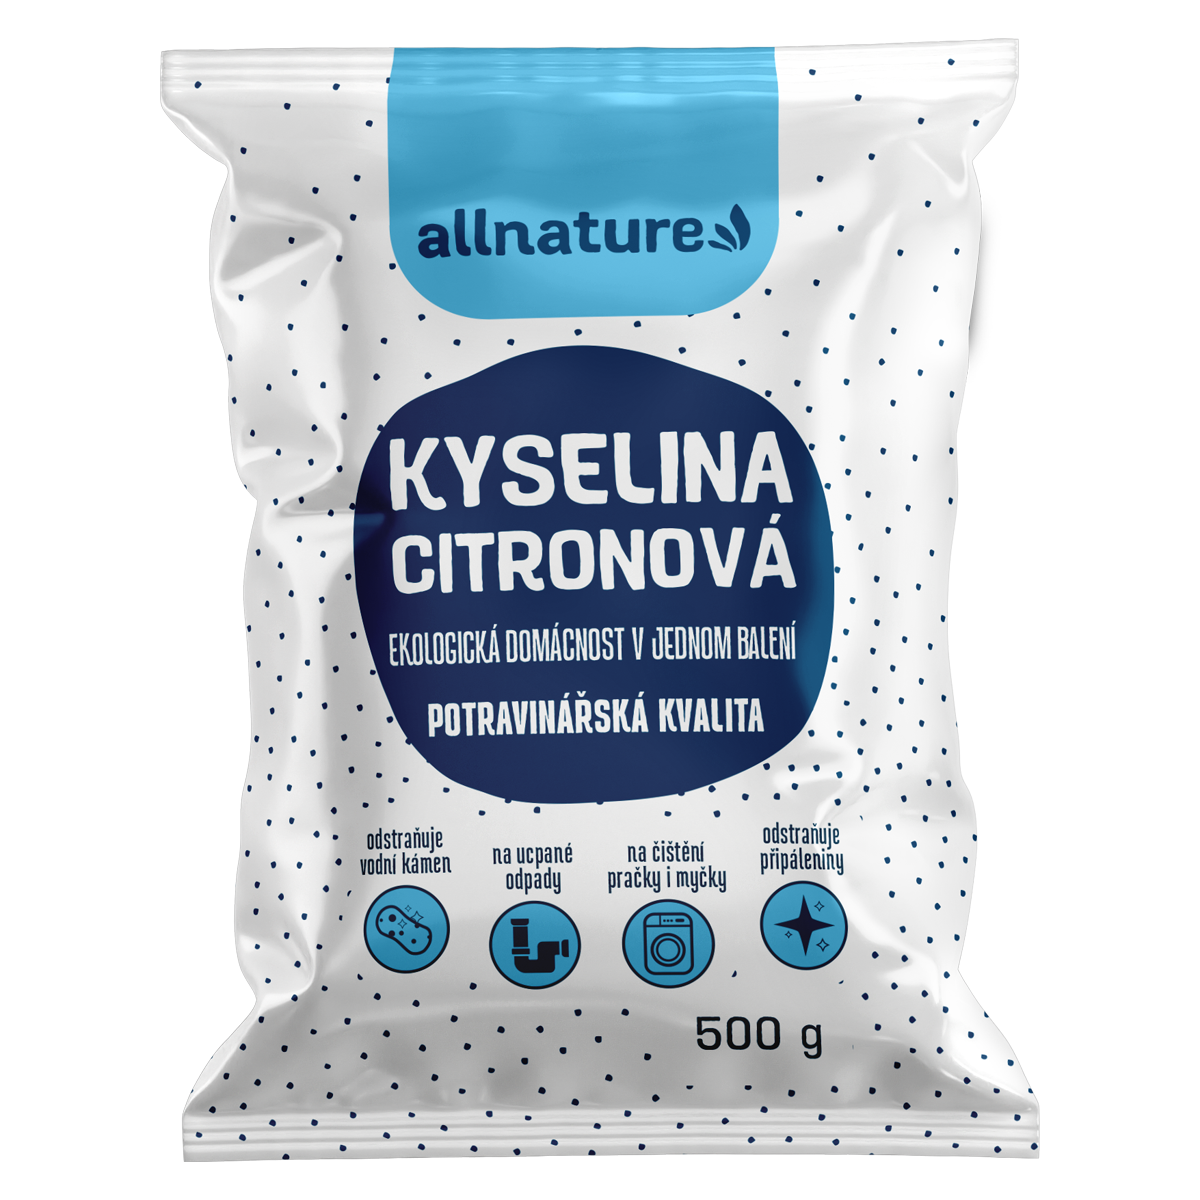 Allnature Kyselina citronová 500 g - II. jakost - potravinářská kvalita Allnature